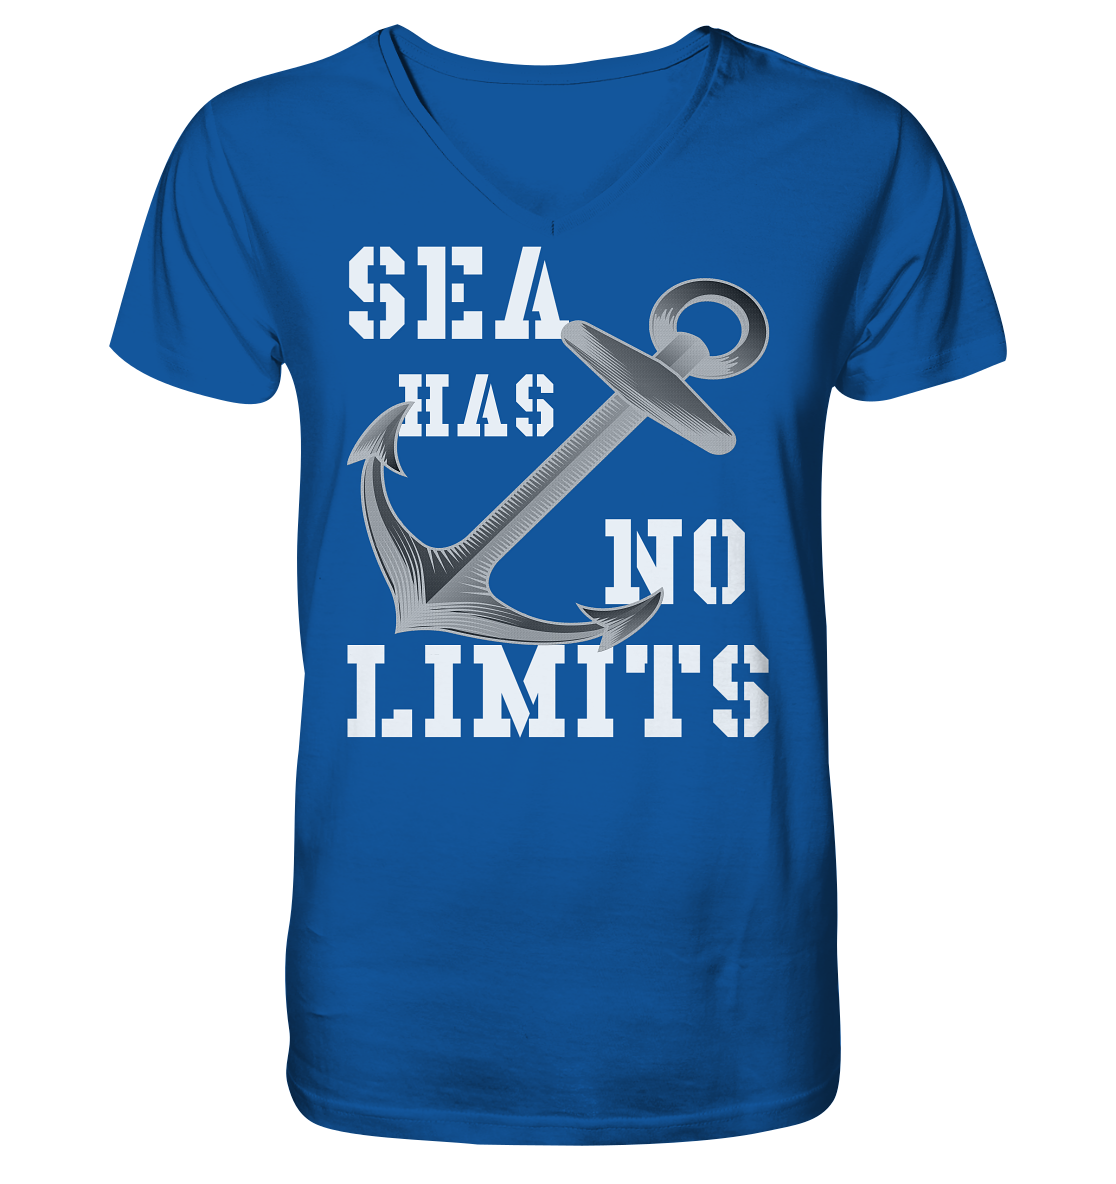 Sea has no limits - Mens Organic V-Neck Shirt